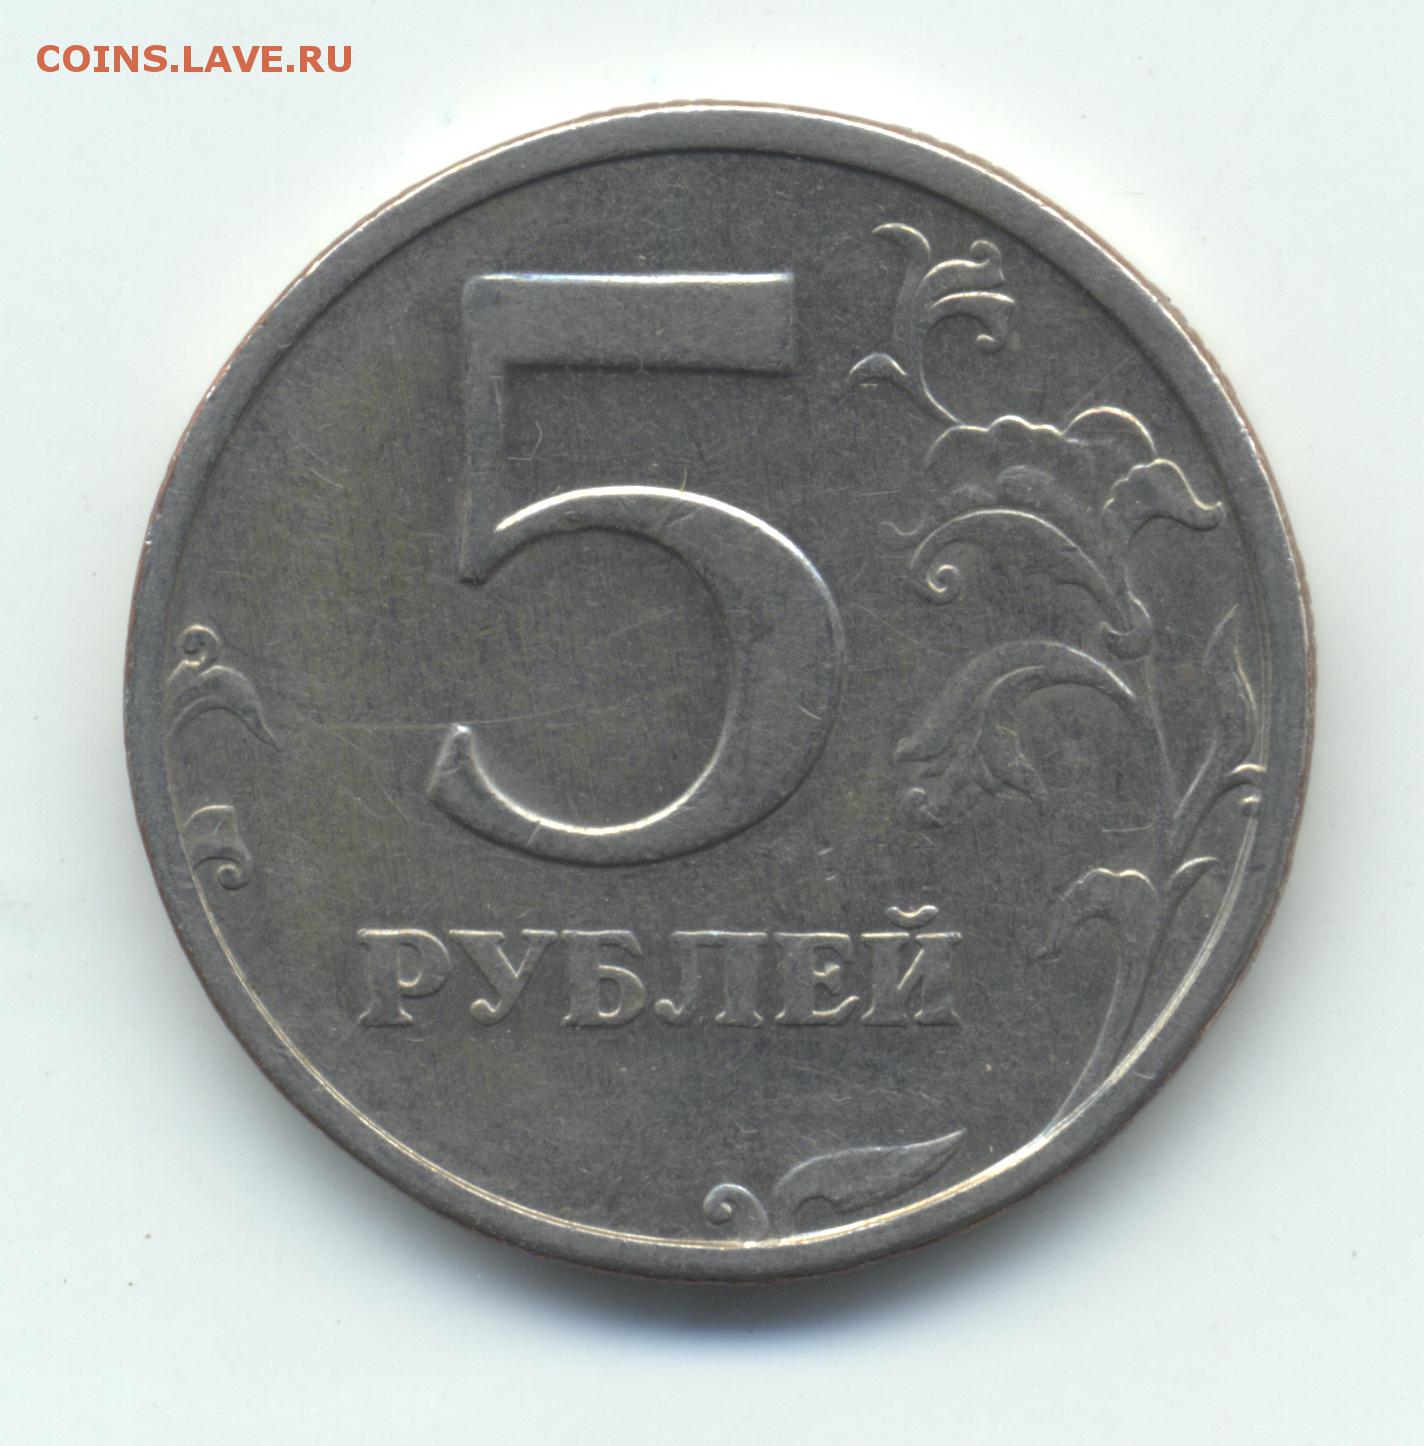 13 5 в рублях. 5 Рублей 1997 СПМД шт 3. Монета 5 рублей 1991. 5 Рублей 1997 ММД. 5 Рублей 1997 года железные.